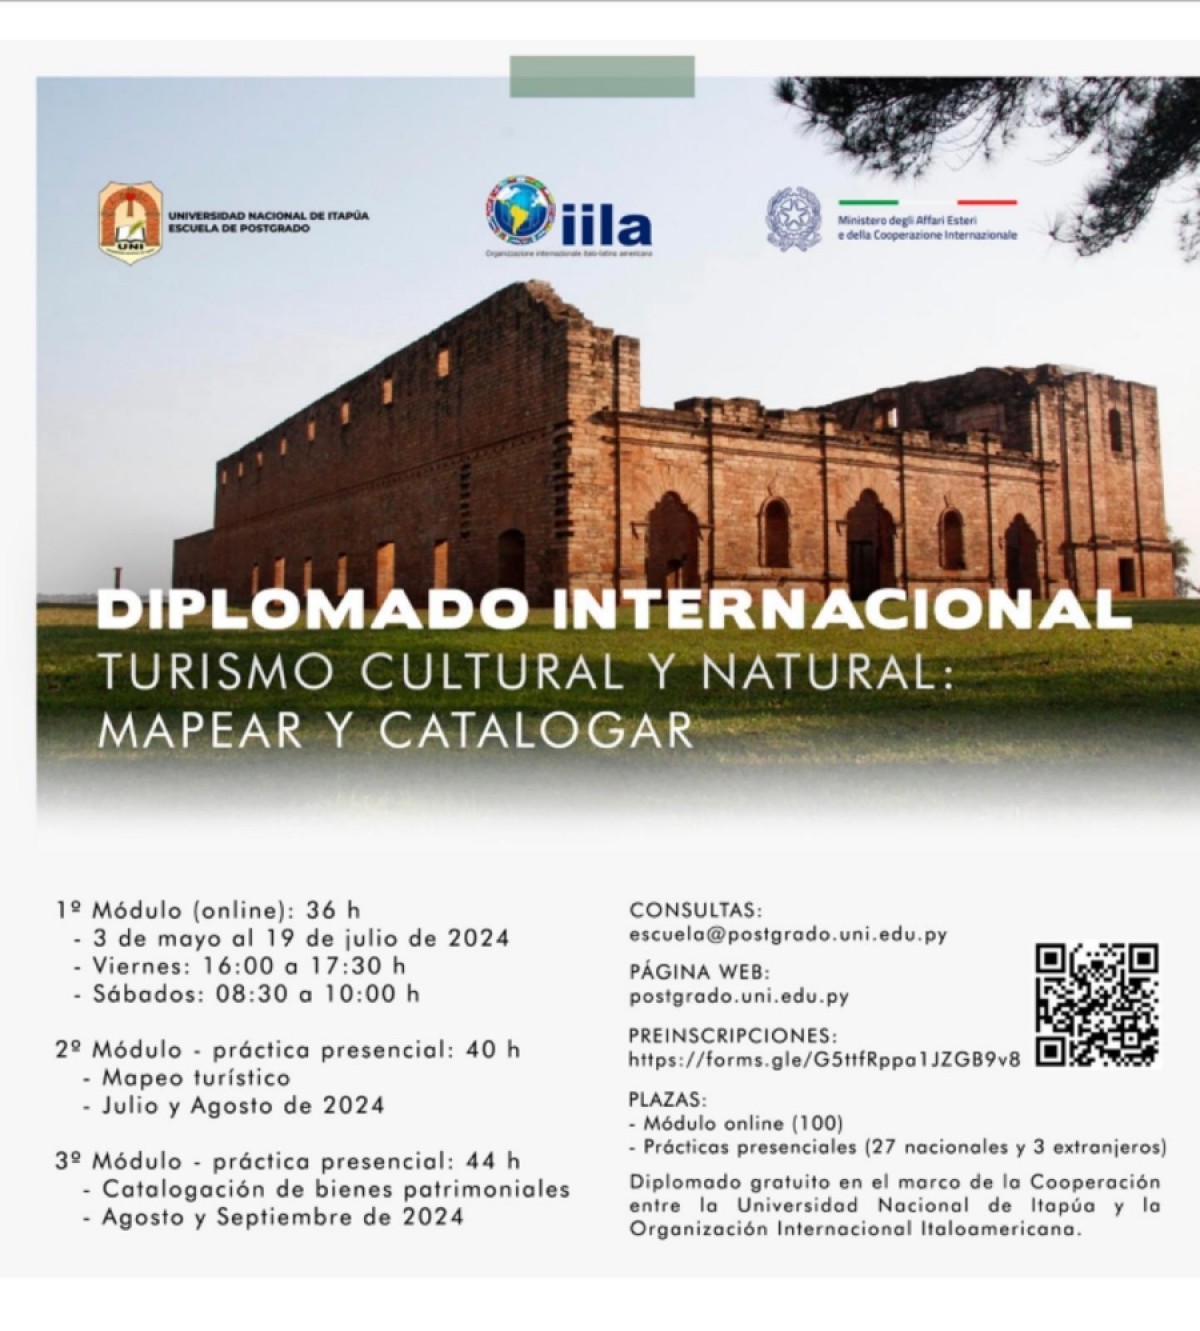 Diplomado Internacional Turismo Cultural y Natural: Mapear y Catalogar